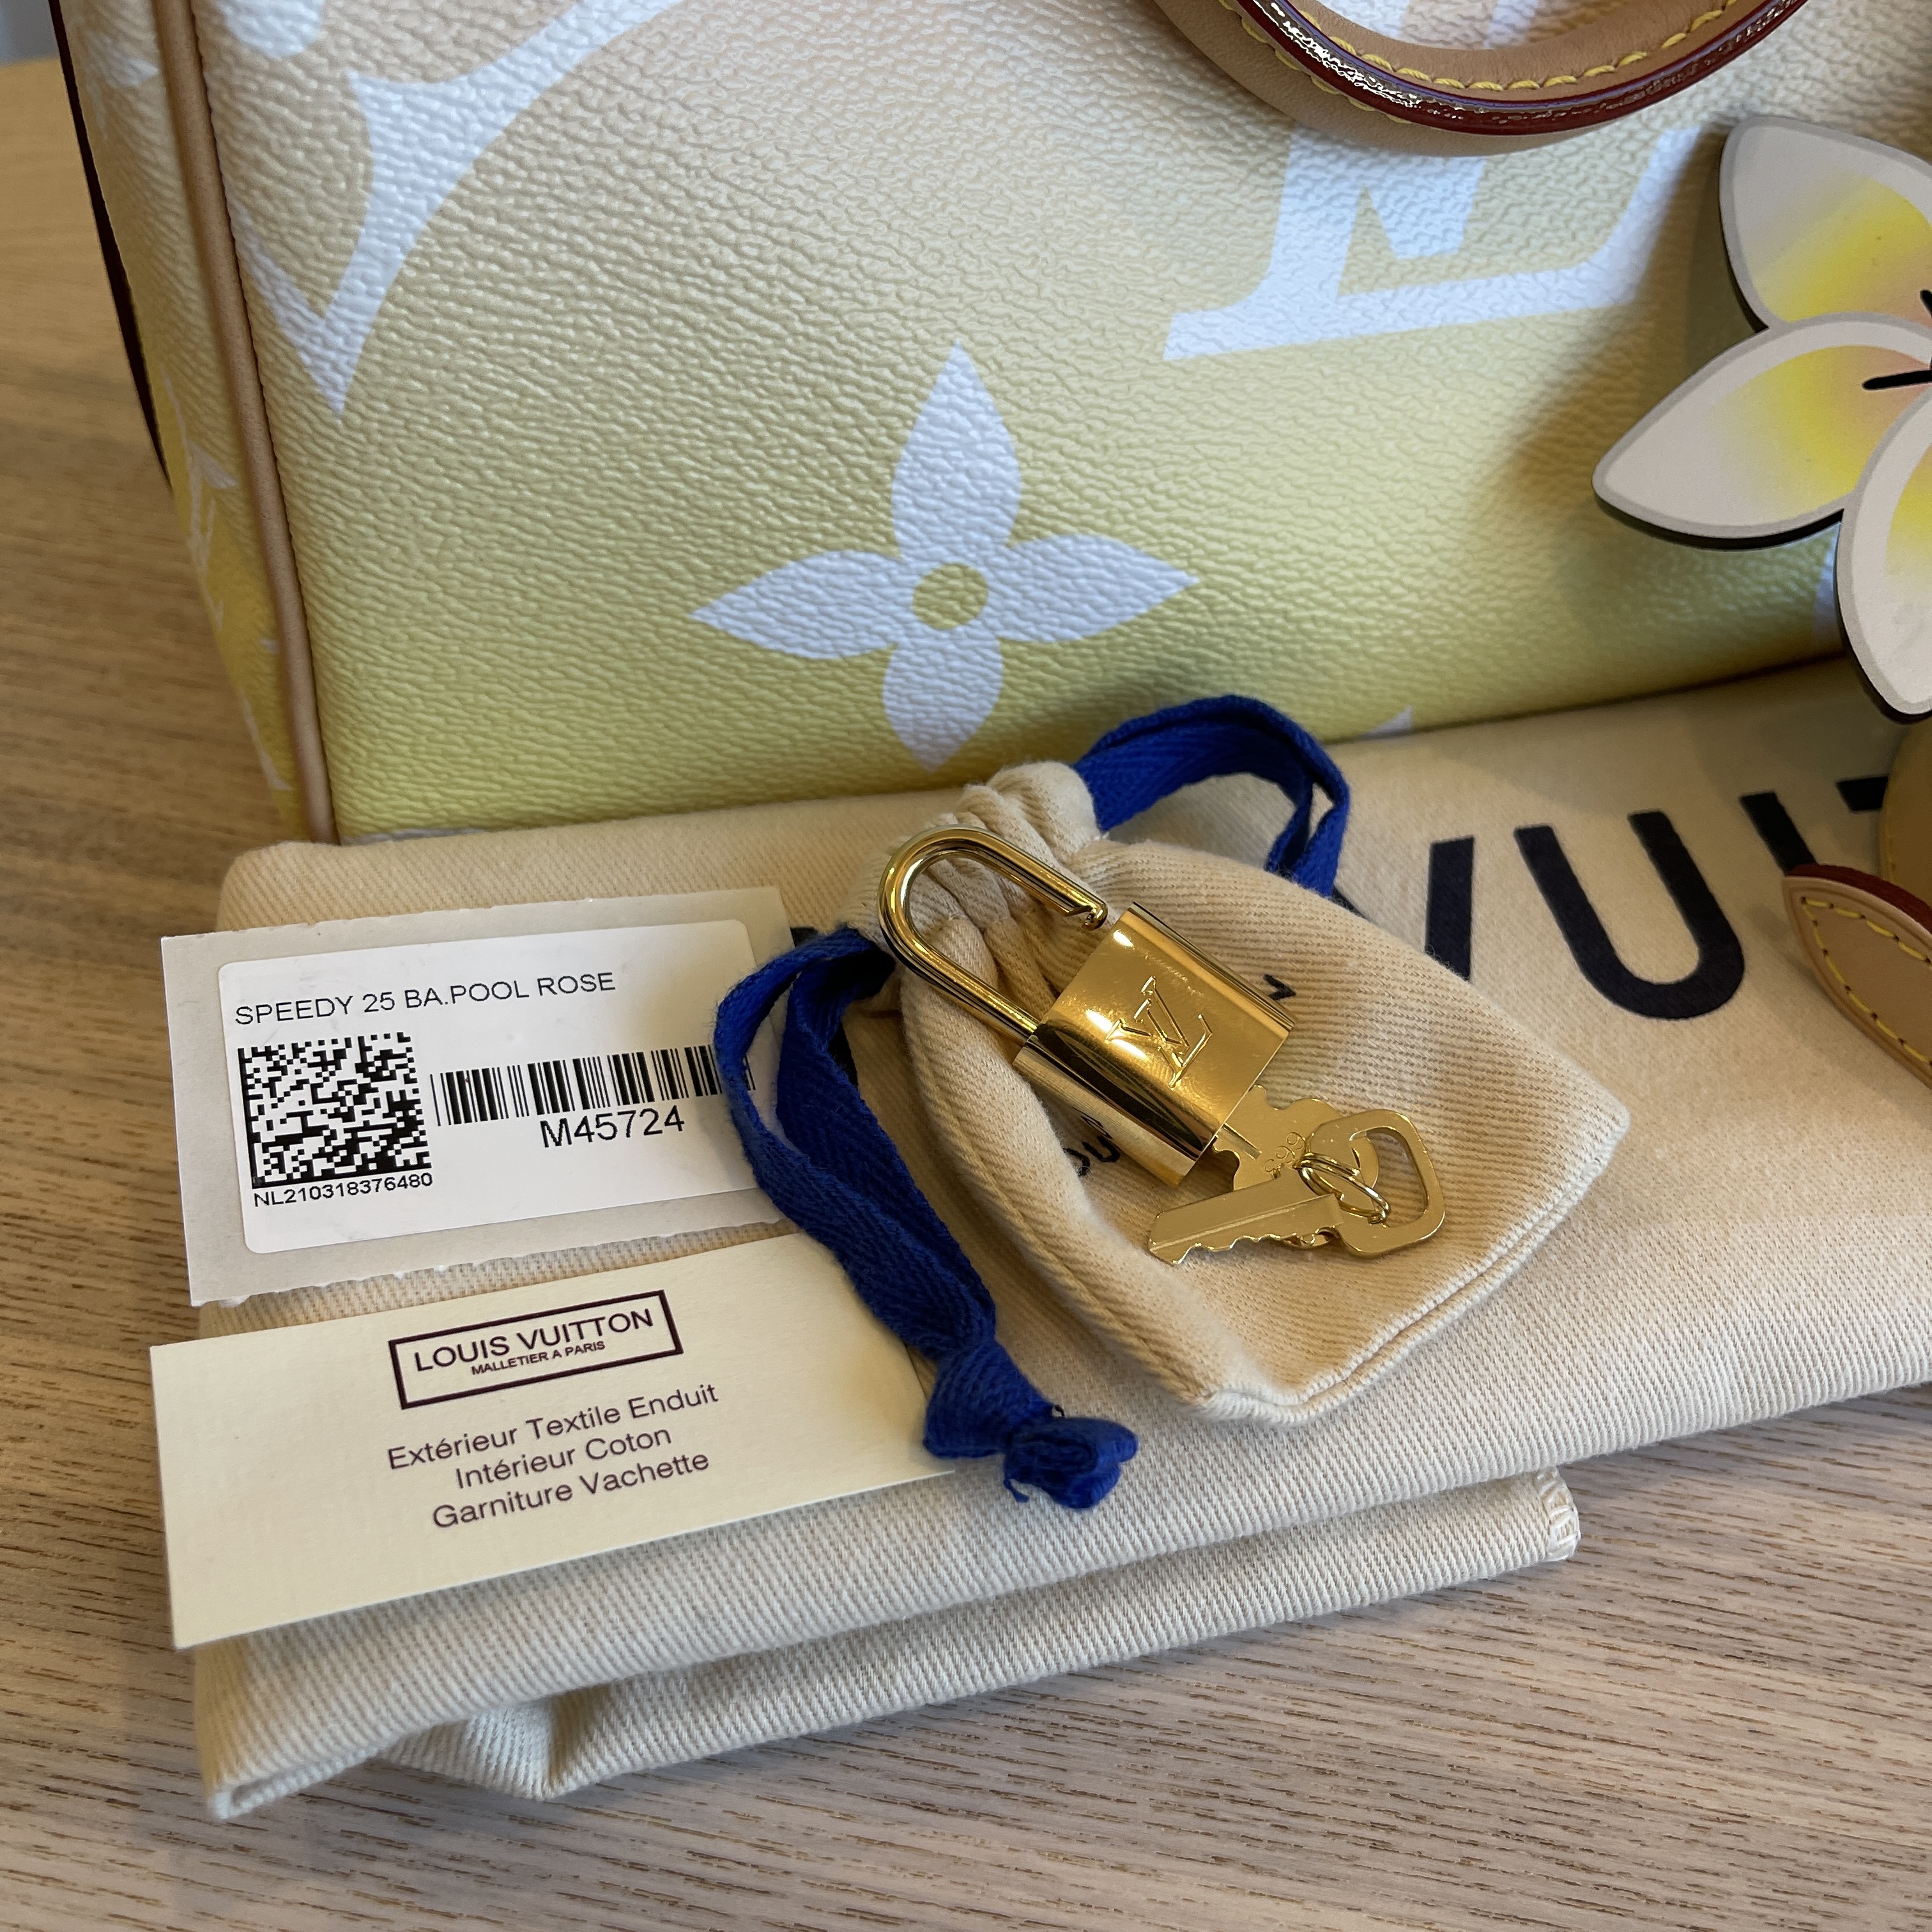 Louis Vuitton By the Pool Collection 2021 Speedy 25 & Fleur de Monogram Bag  Charm Chain Unboxing 